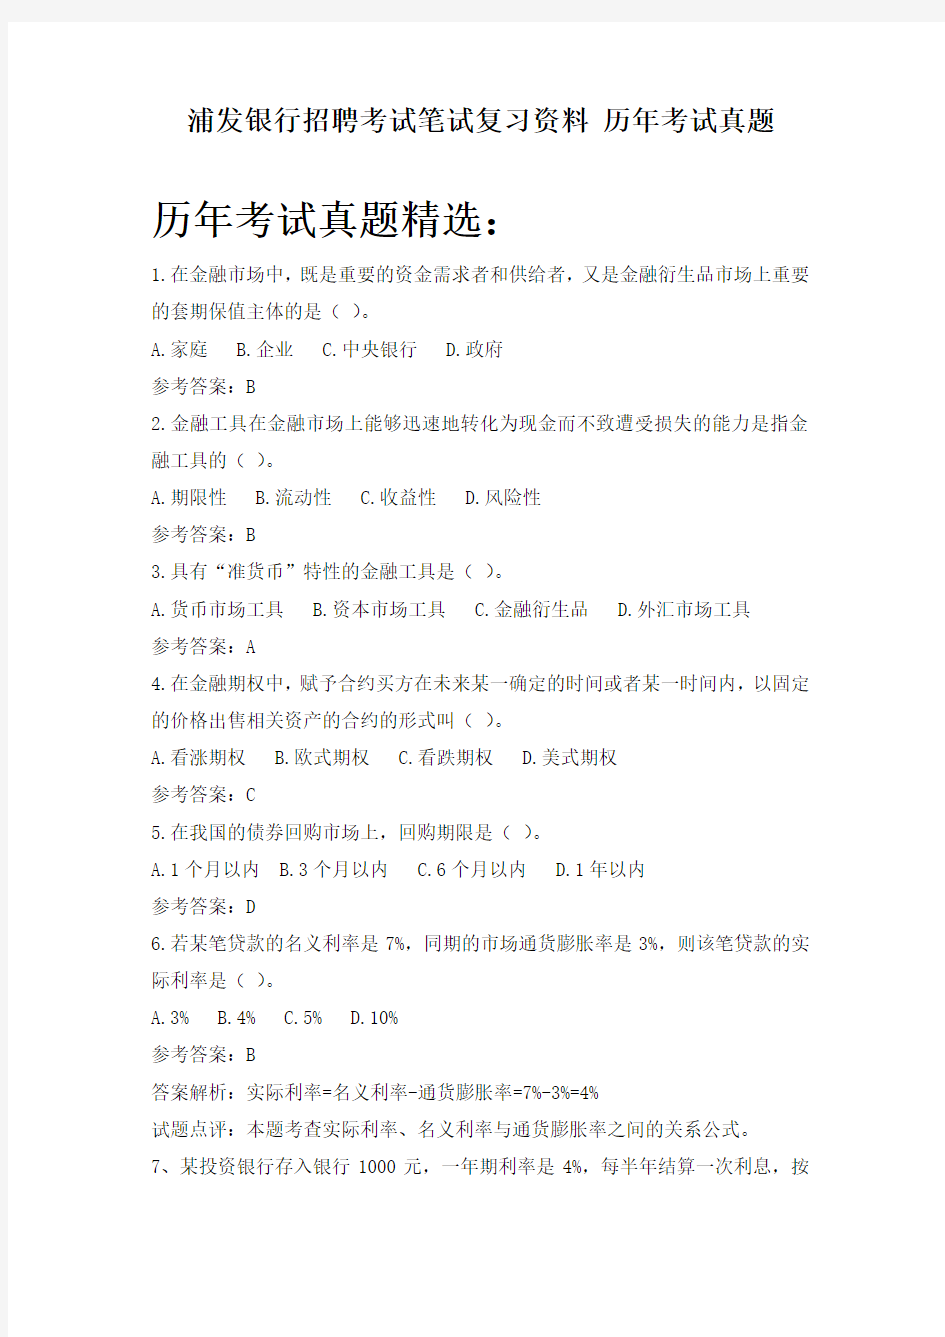 上海浦东发展银行校园招聘考试笔试复习资料